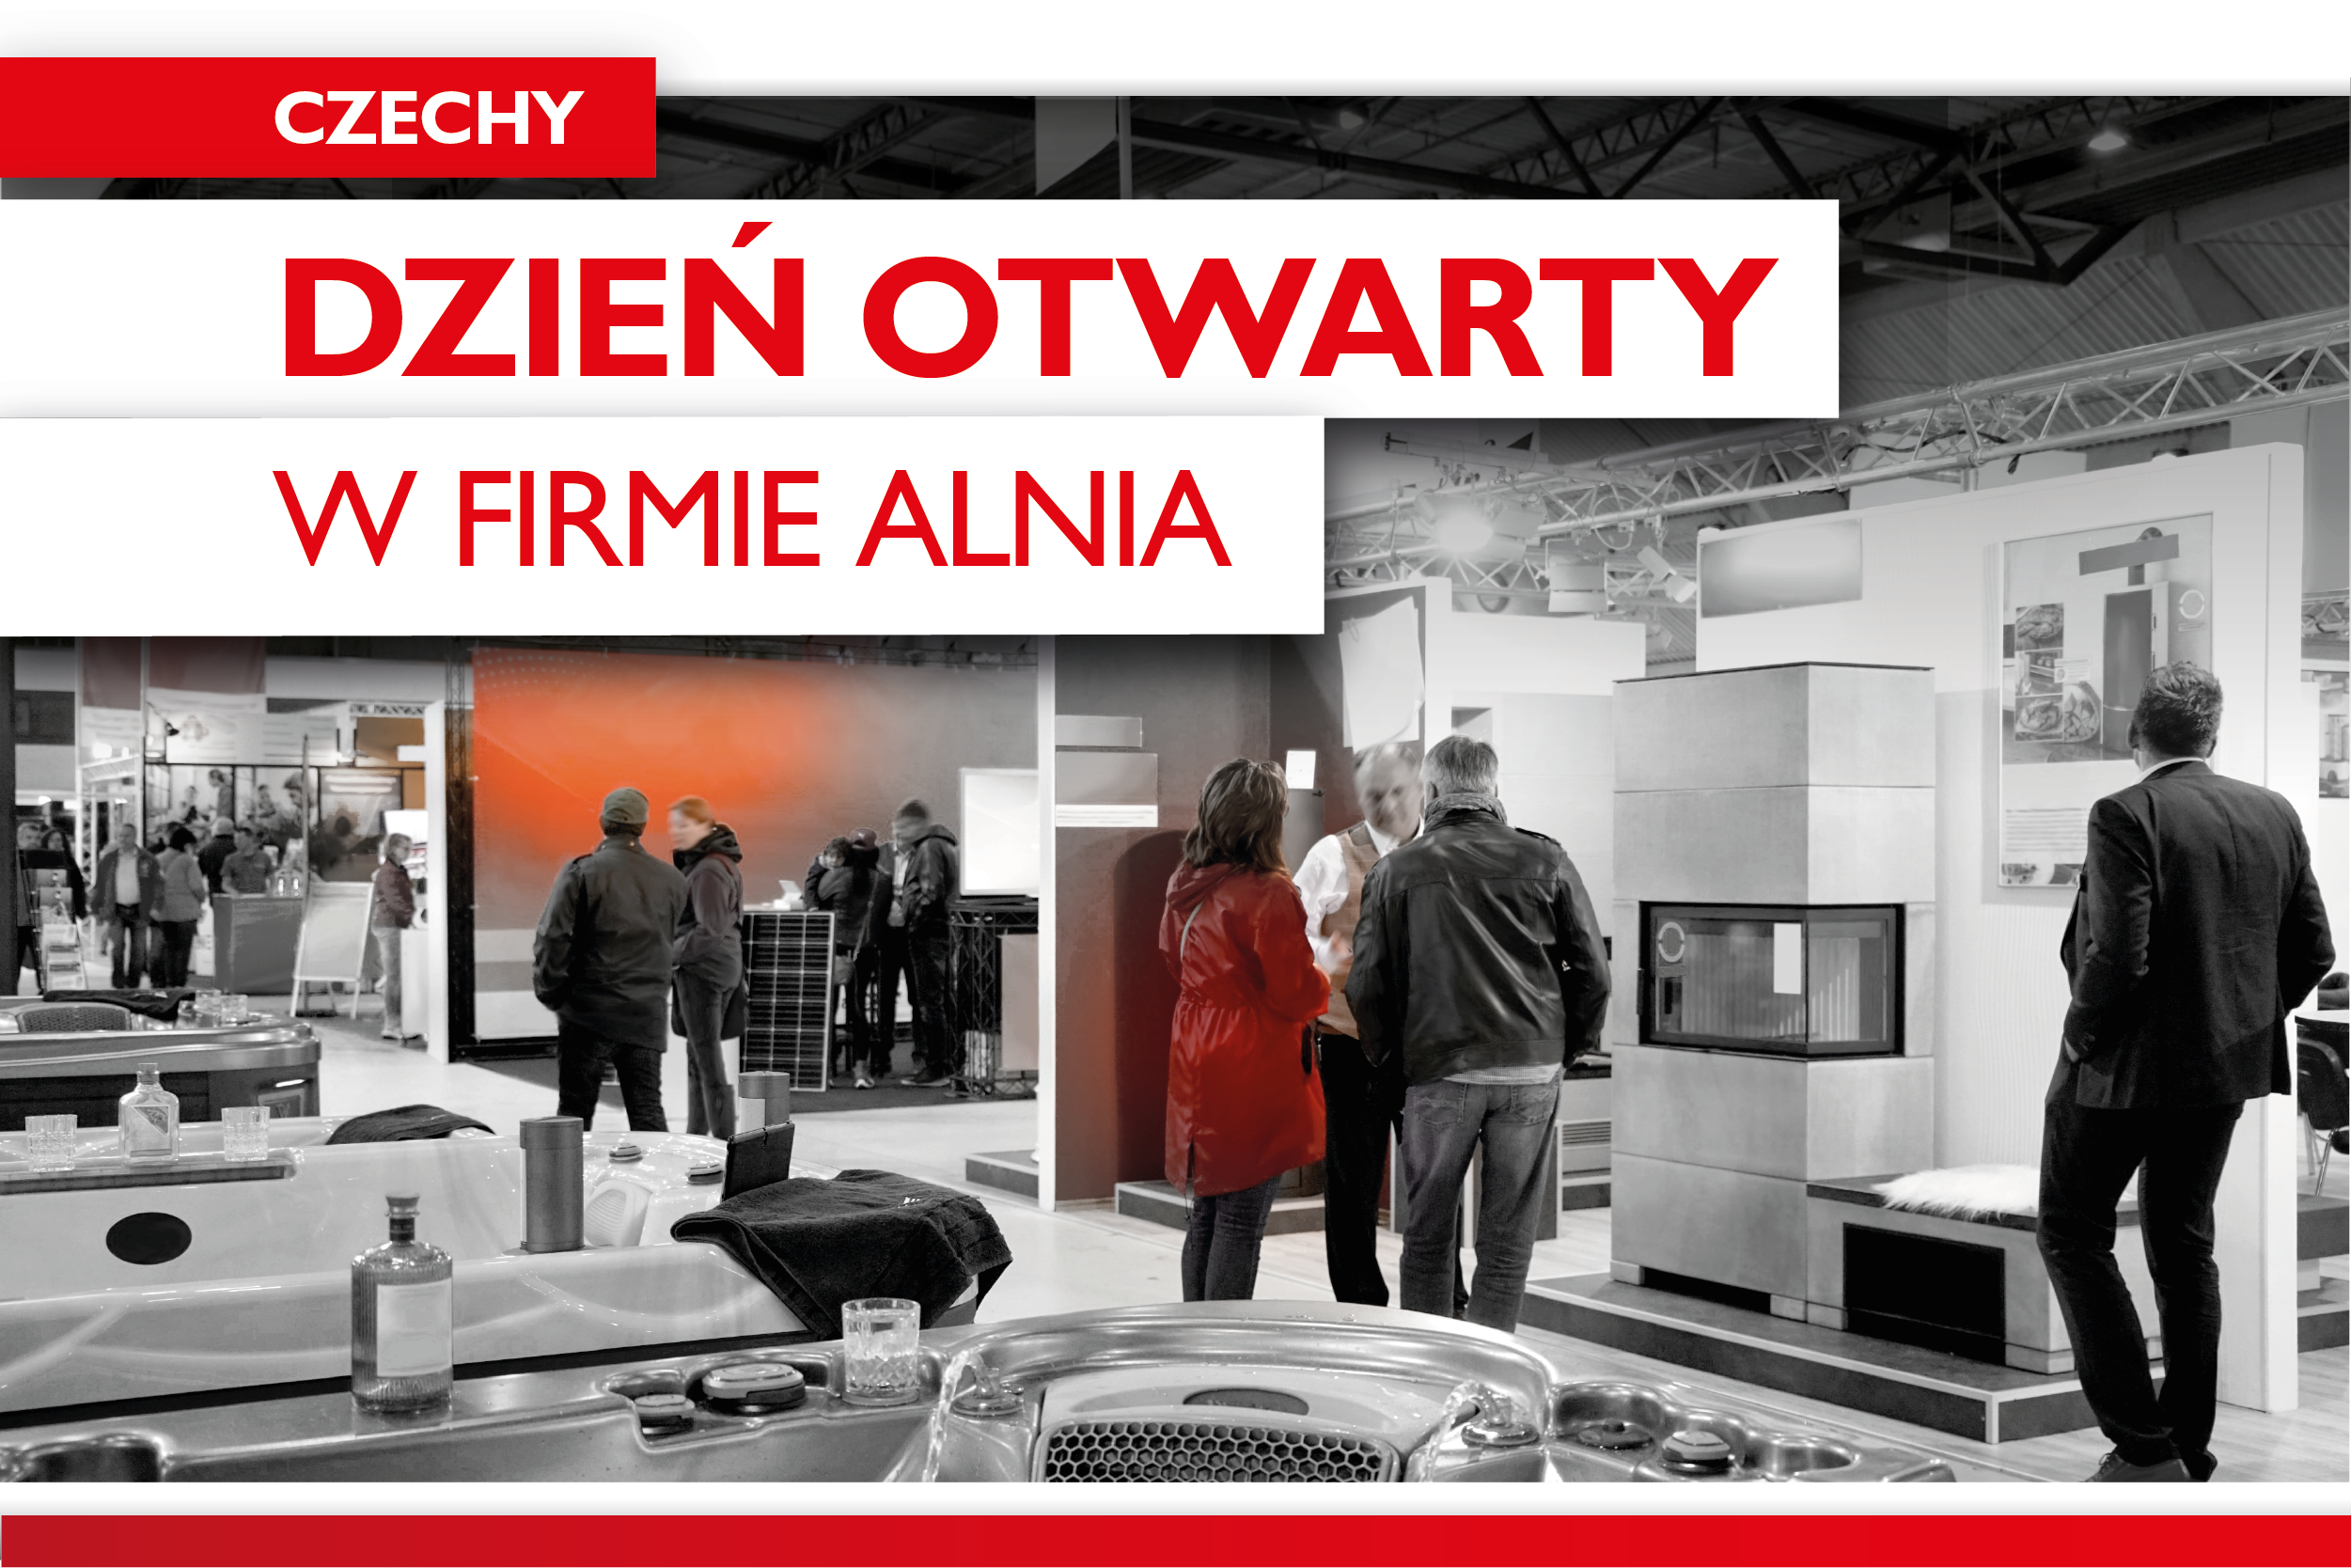 Dzień otwarty w firmie ALNIA, Czechy